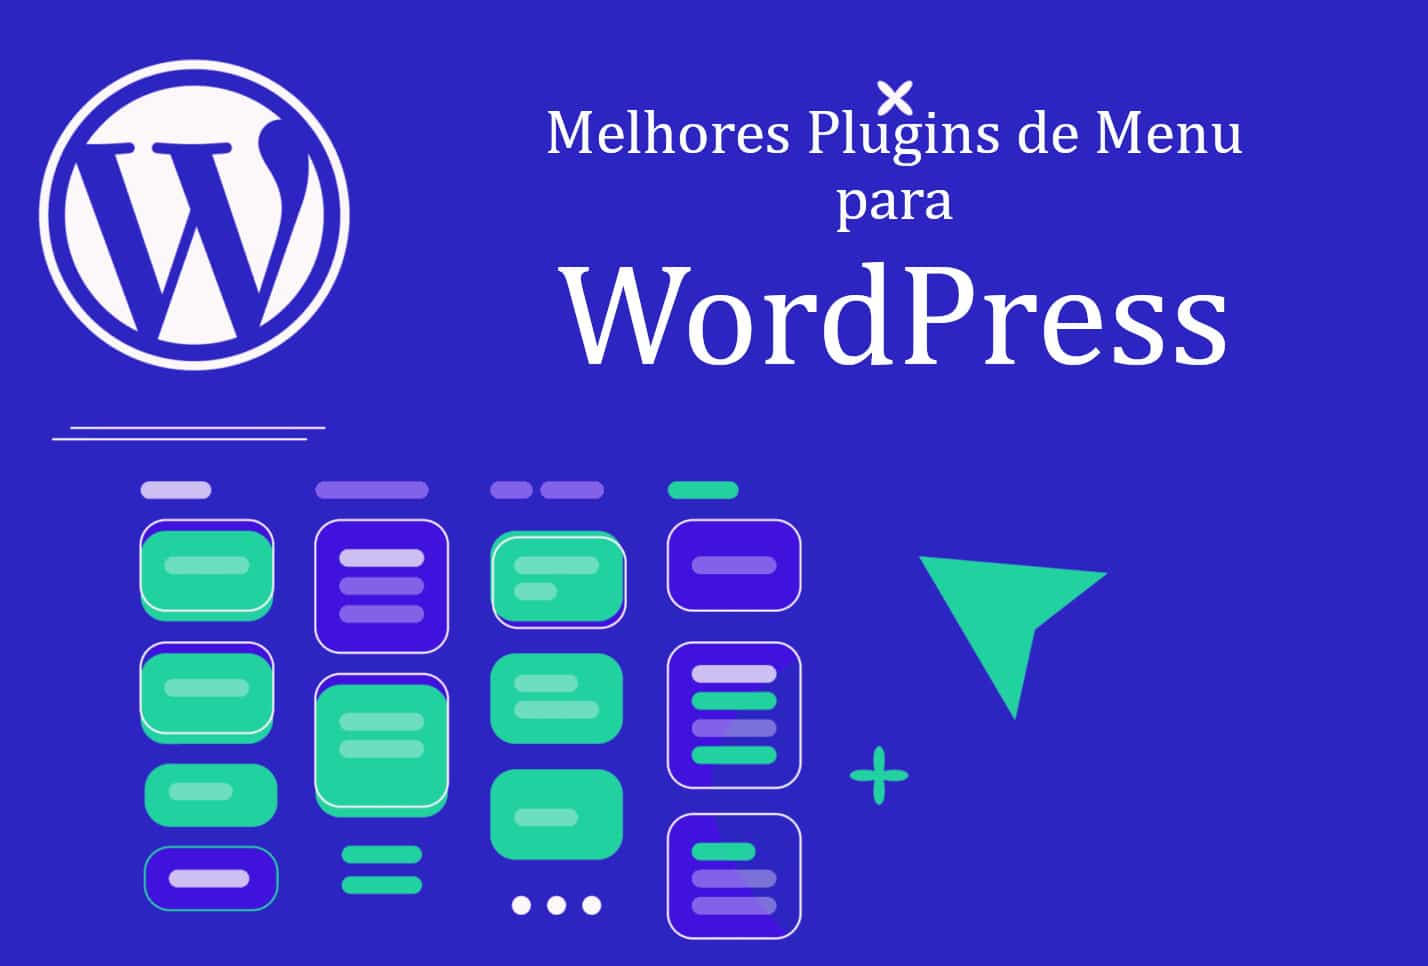 Melhores plugins de menu para wordpress em 2021 | 854290c6 capa | desenvolvimento, pc, plugins, site, tecnologia, wordpress | plugins de menu para wordpress dicas/guias